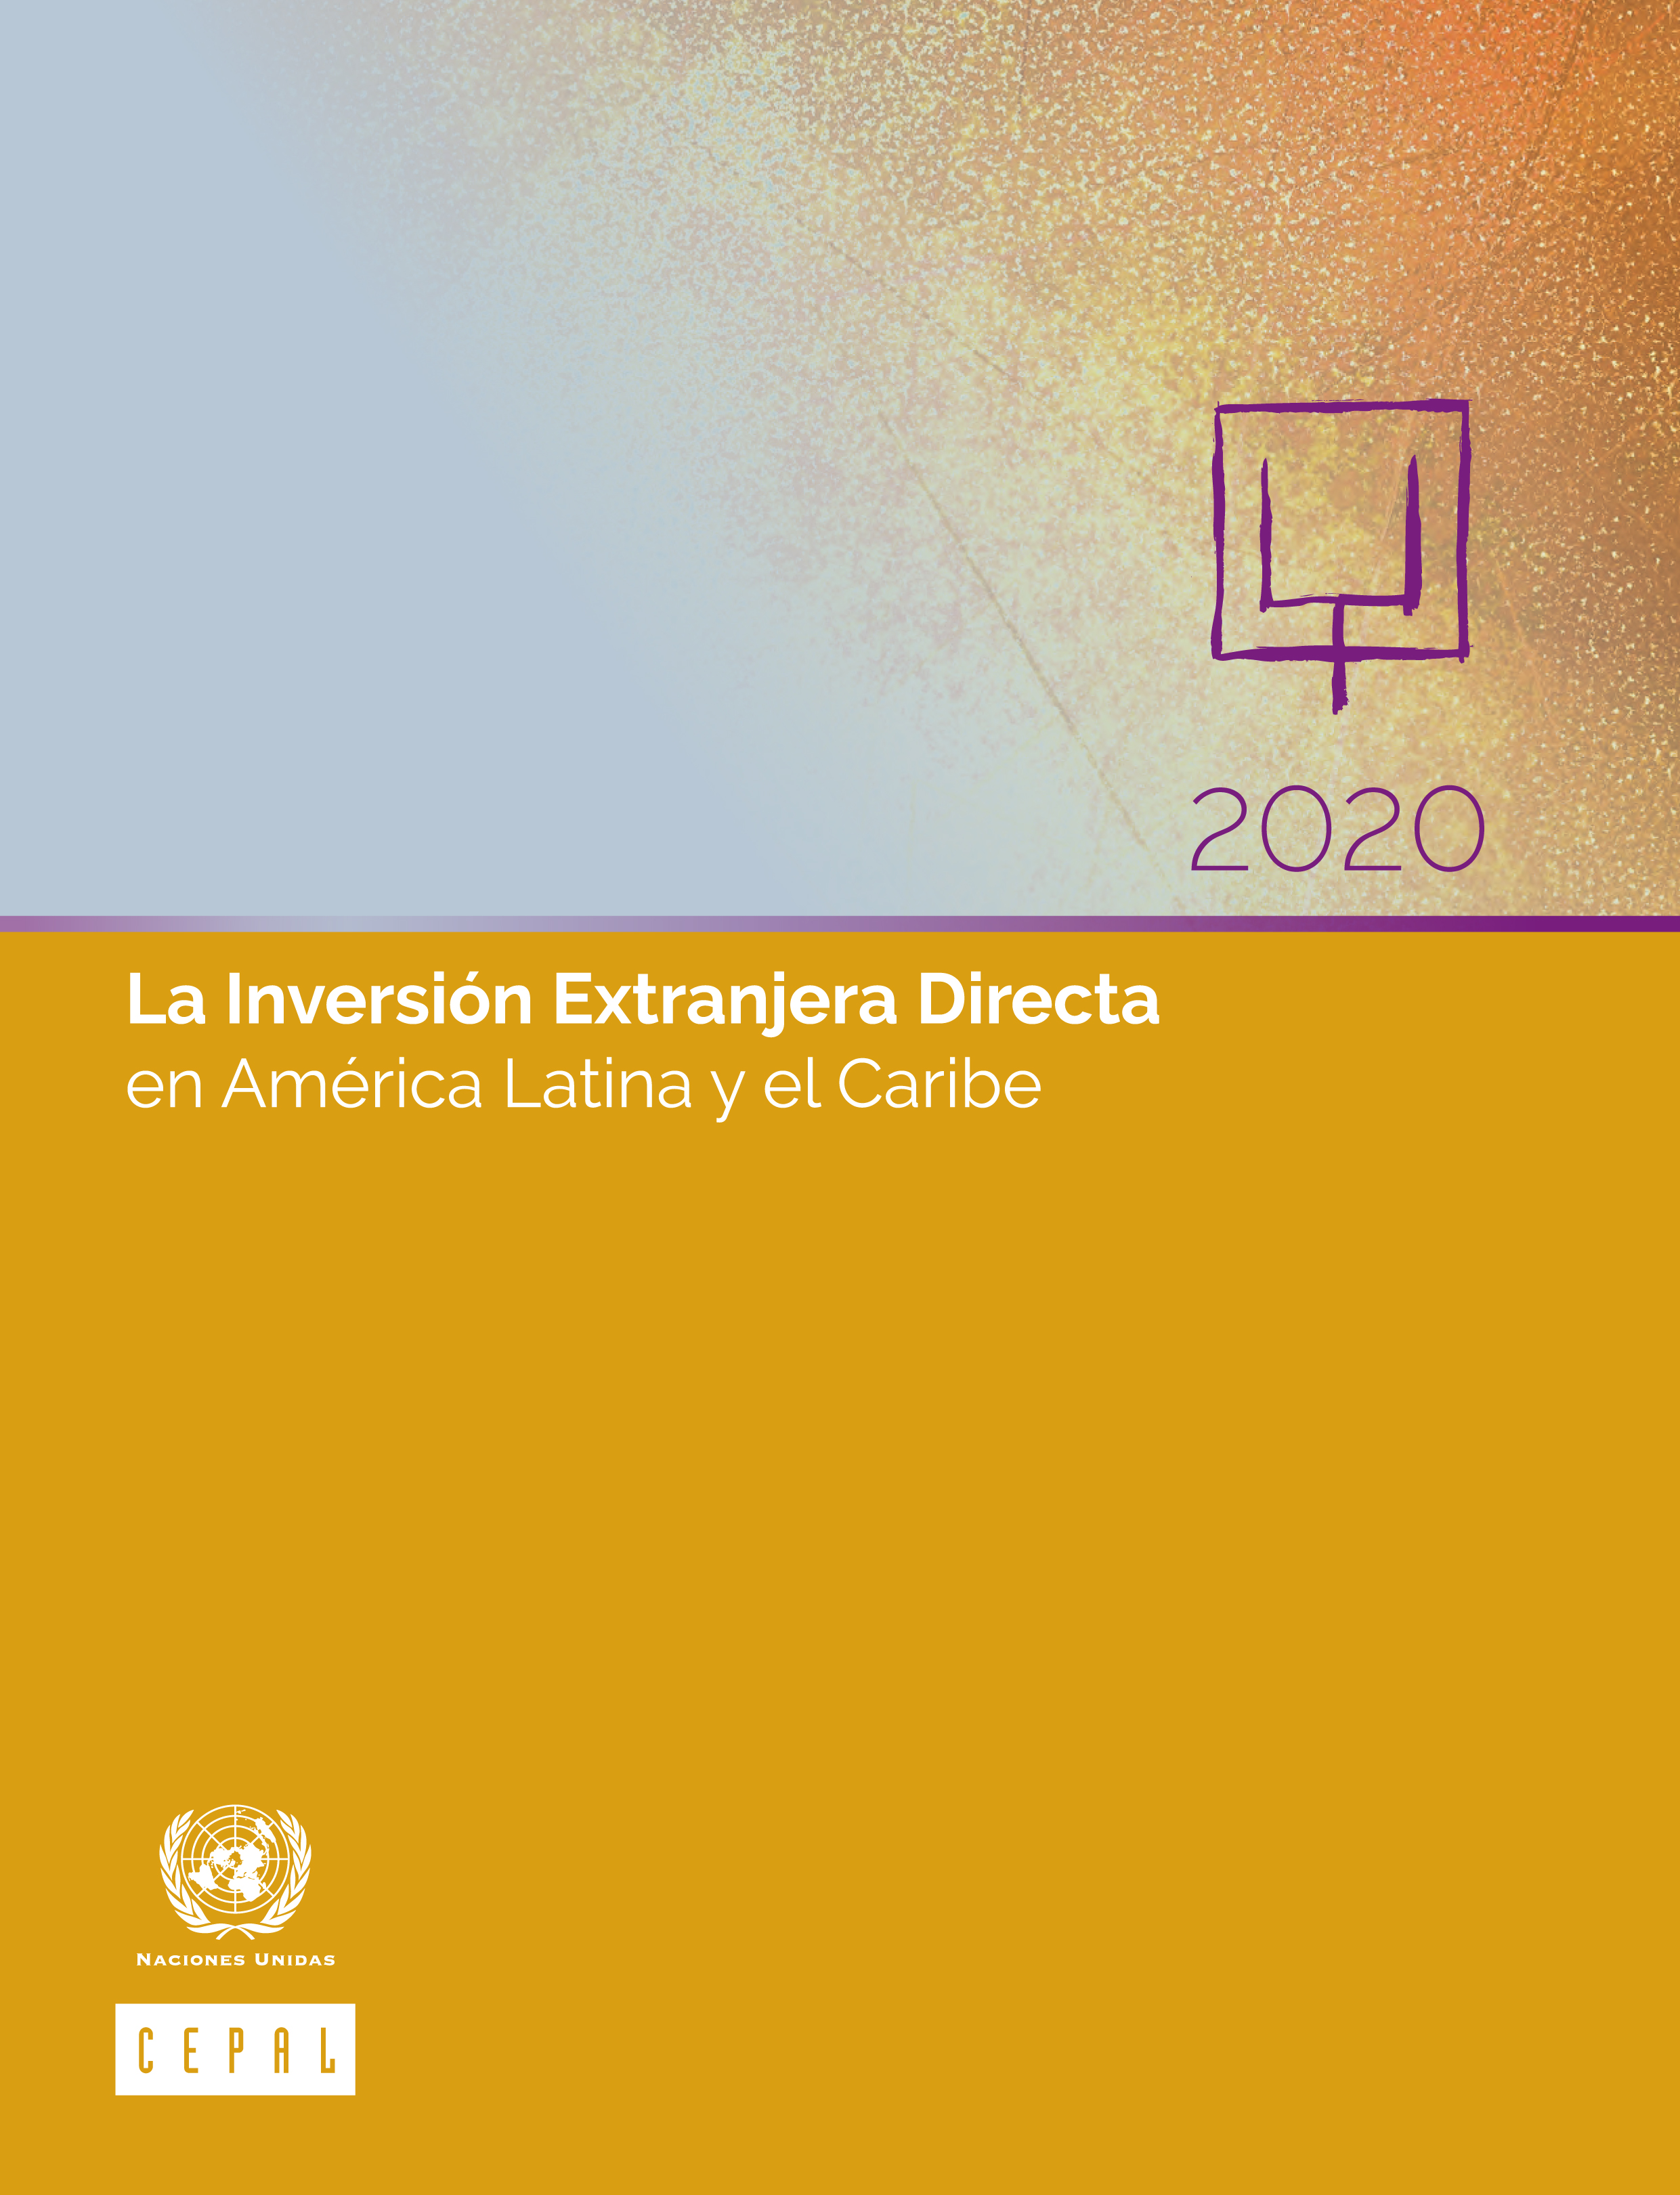 image of La Inversión Extranjera Directa en América Latina y el Caribe 2020